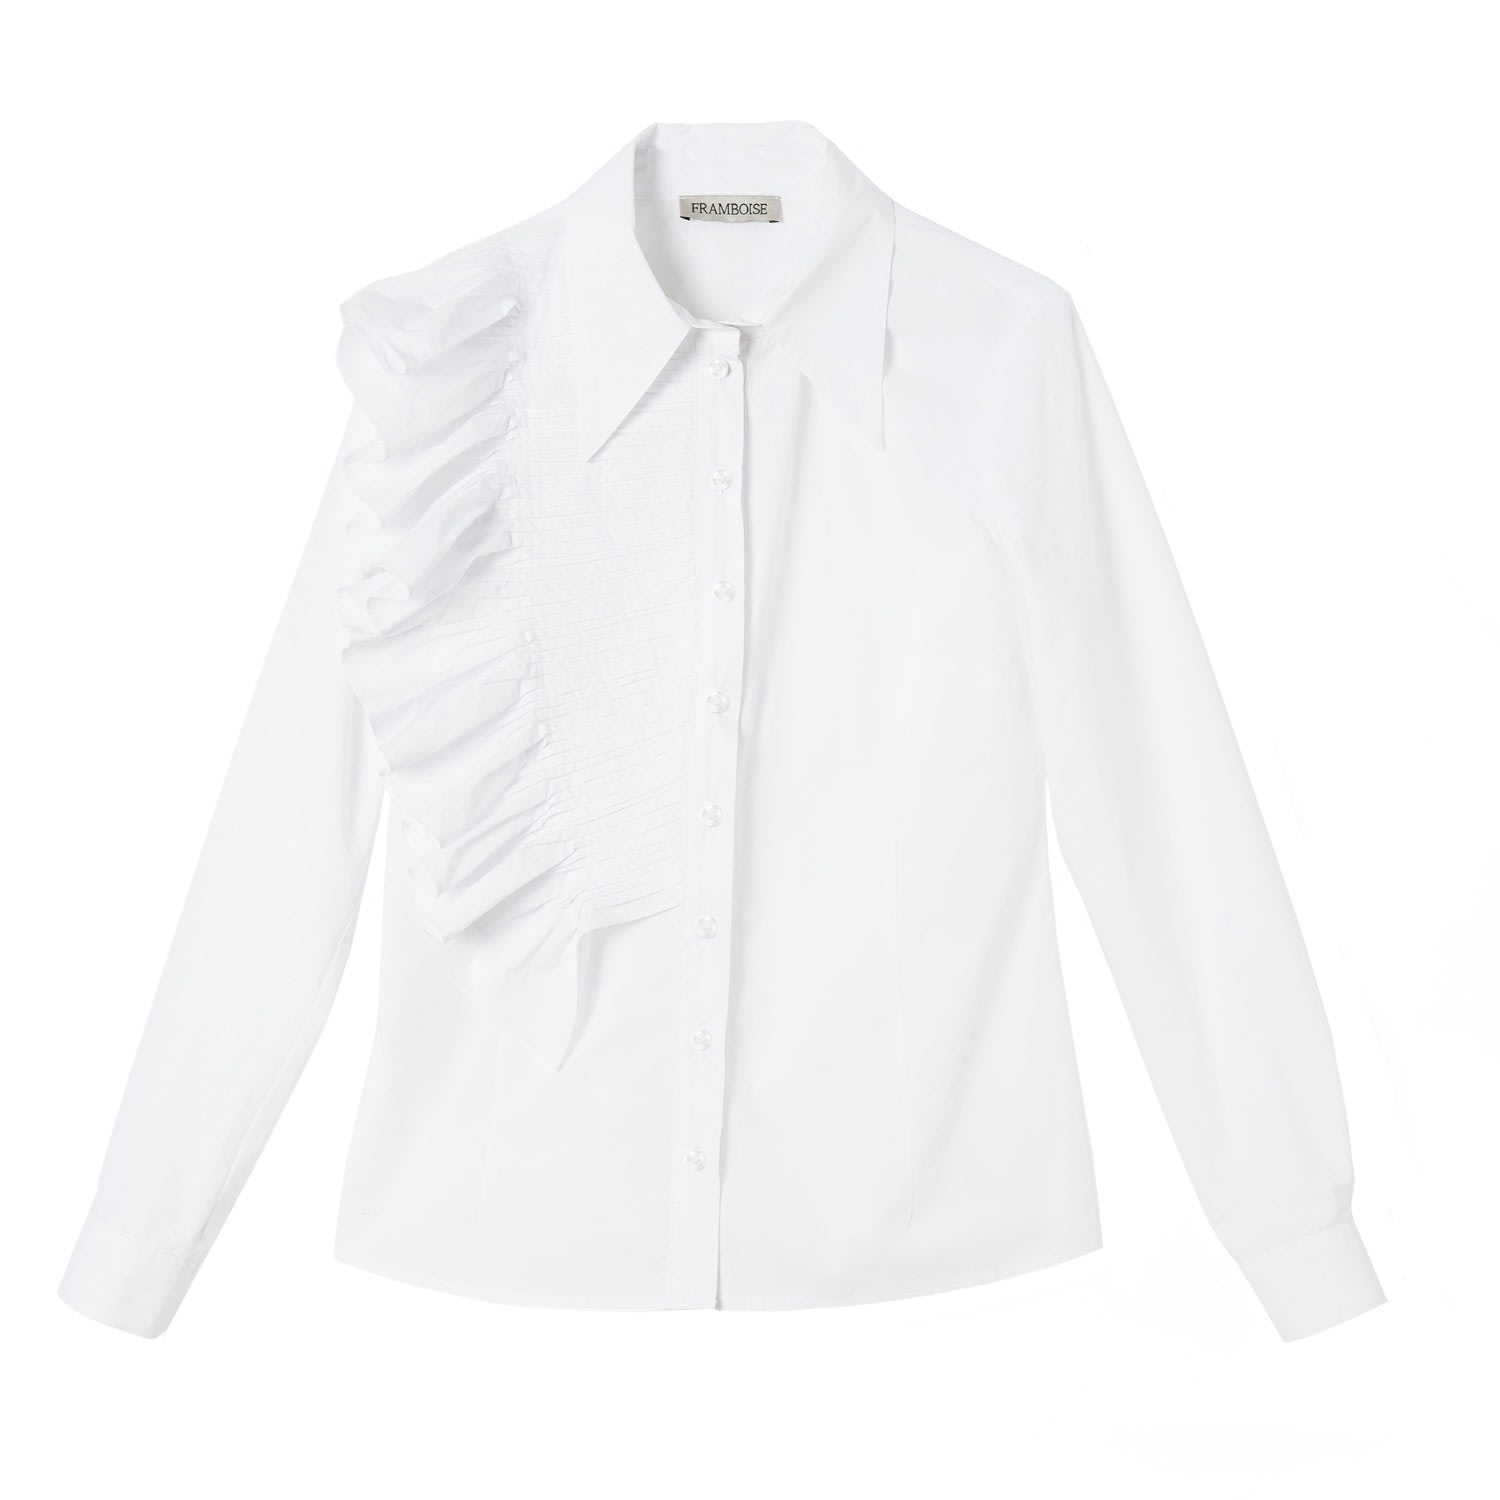 Women’s Lotus White Cotton Shirt Extra Small Framboise